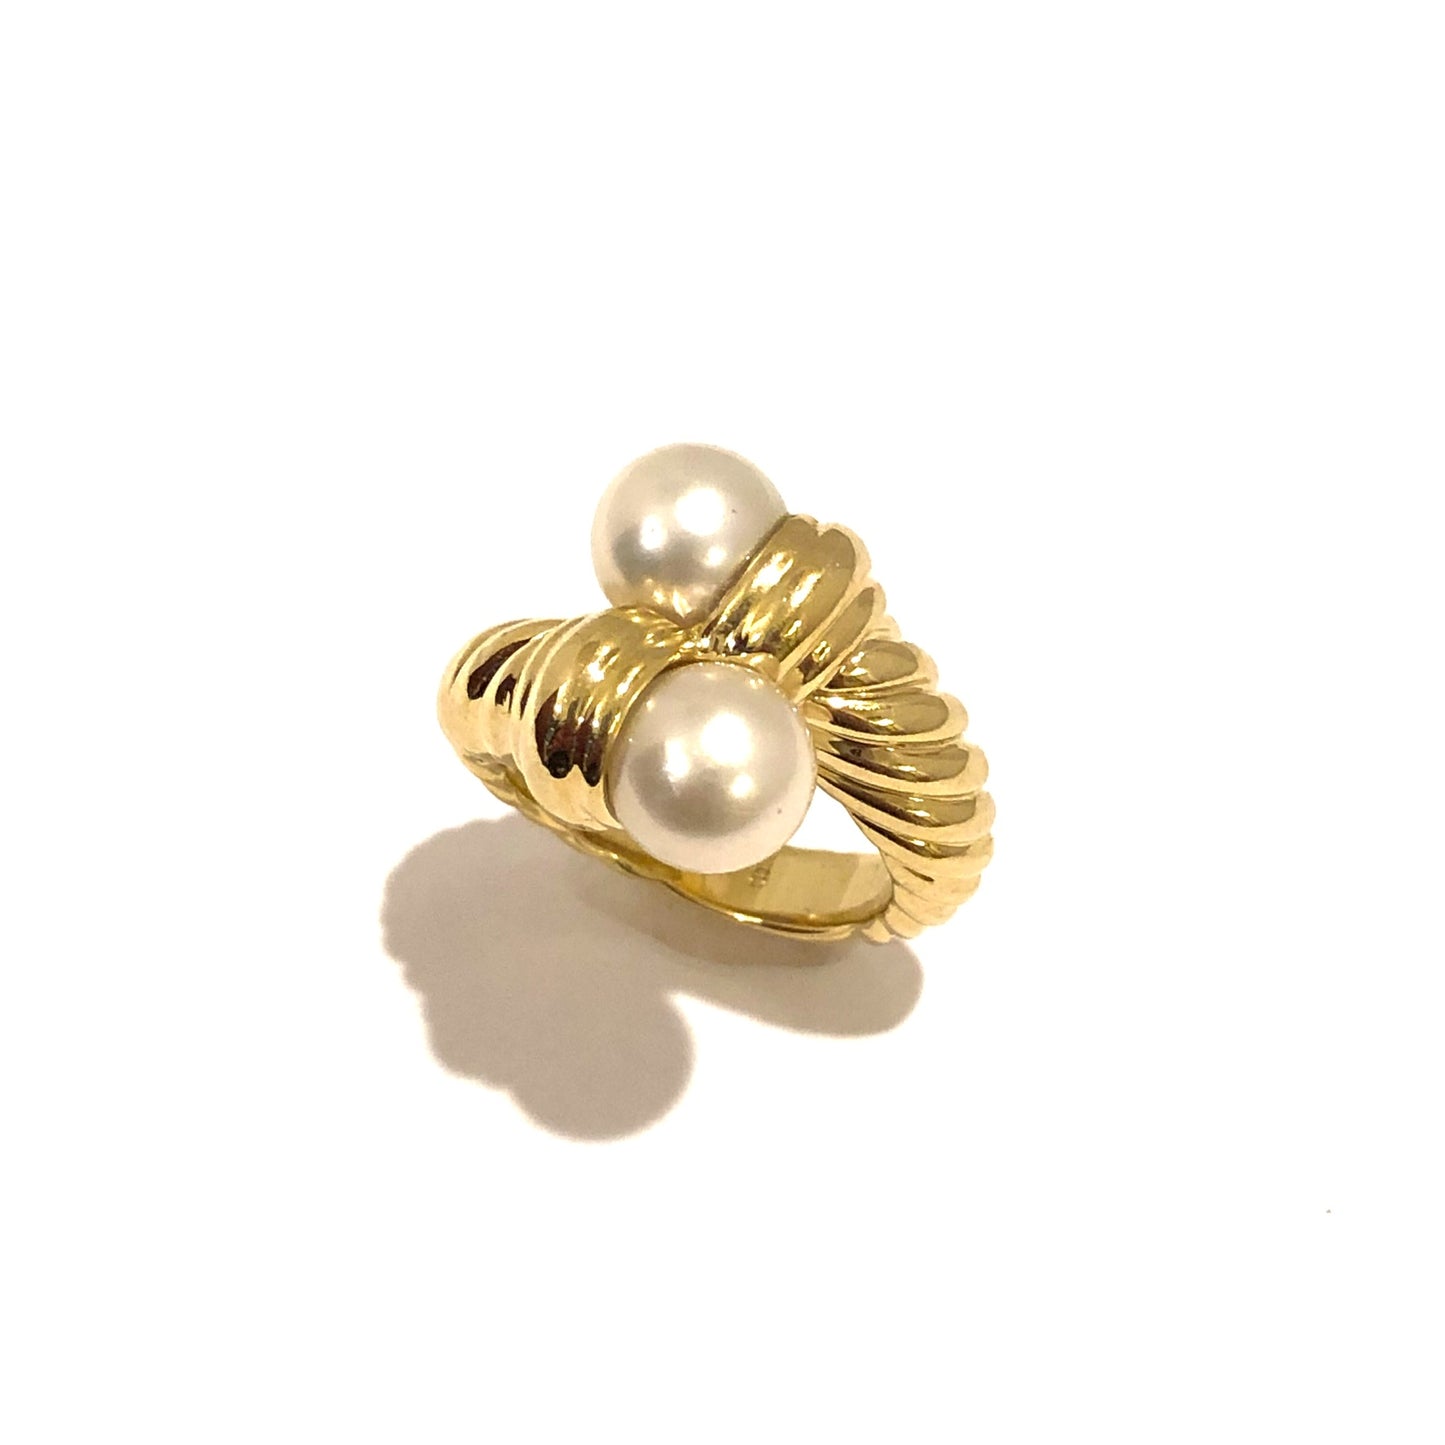 DAVID YURMAN 18K Yellow Gold Natural White Pearls Ladies RING Size 6 Weight 15.19g